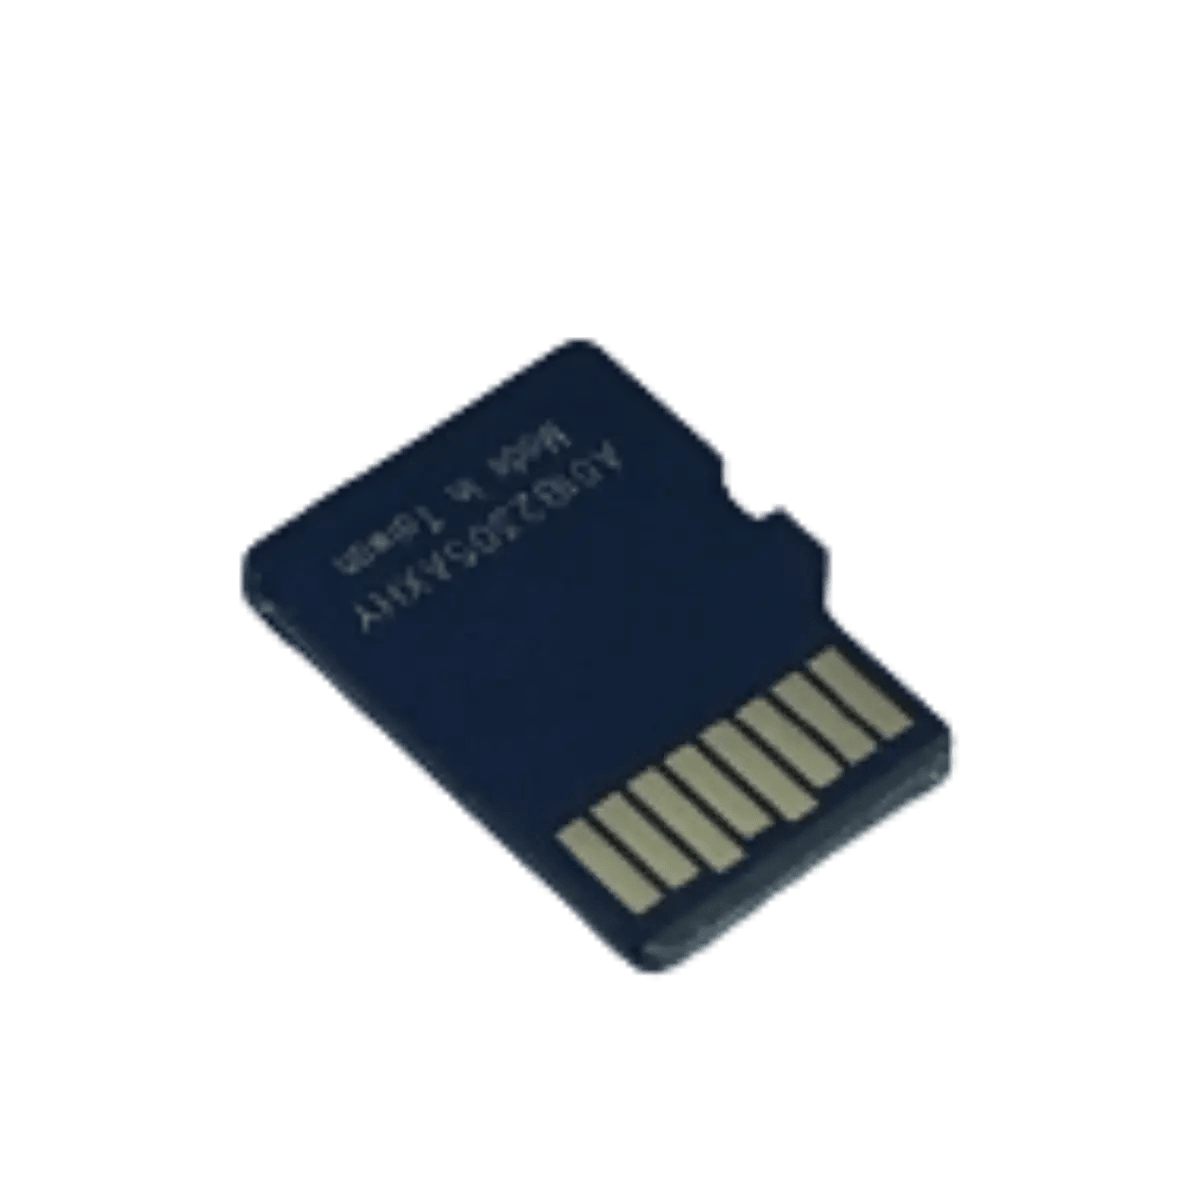 Carte mémoire Micro SD 256Mb